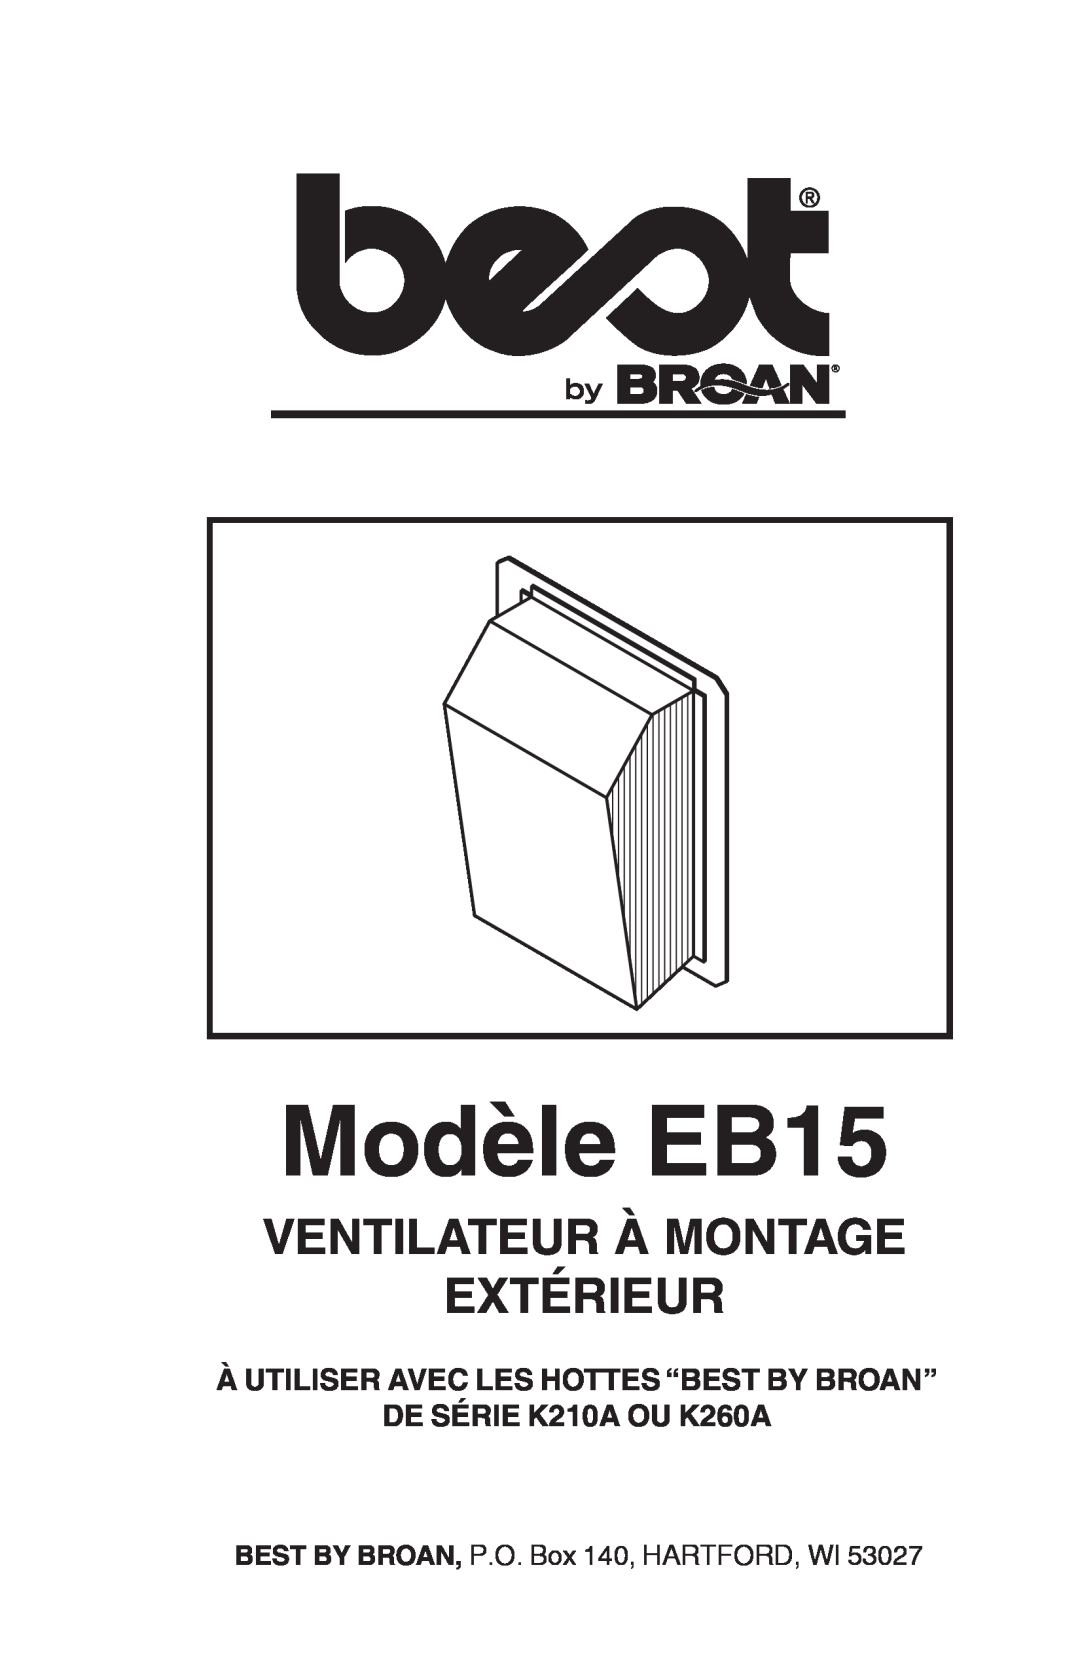 Broan Modèle EB15, Ventilateur À Montage Extérieur, À UTILISER AVEC LES HOTTES “BEST BY BROAN” DE SÉRIE K210A OU K260A 